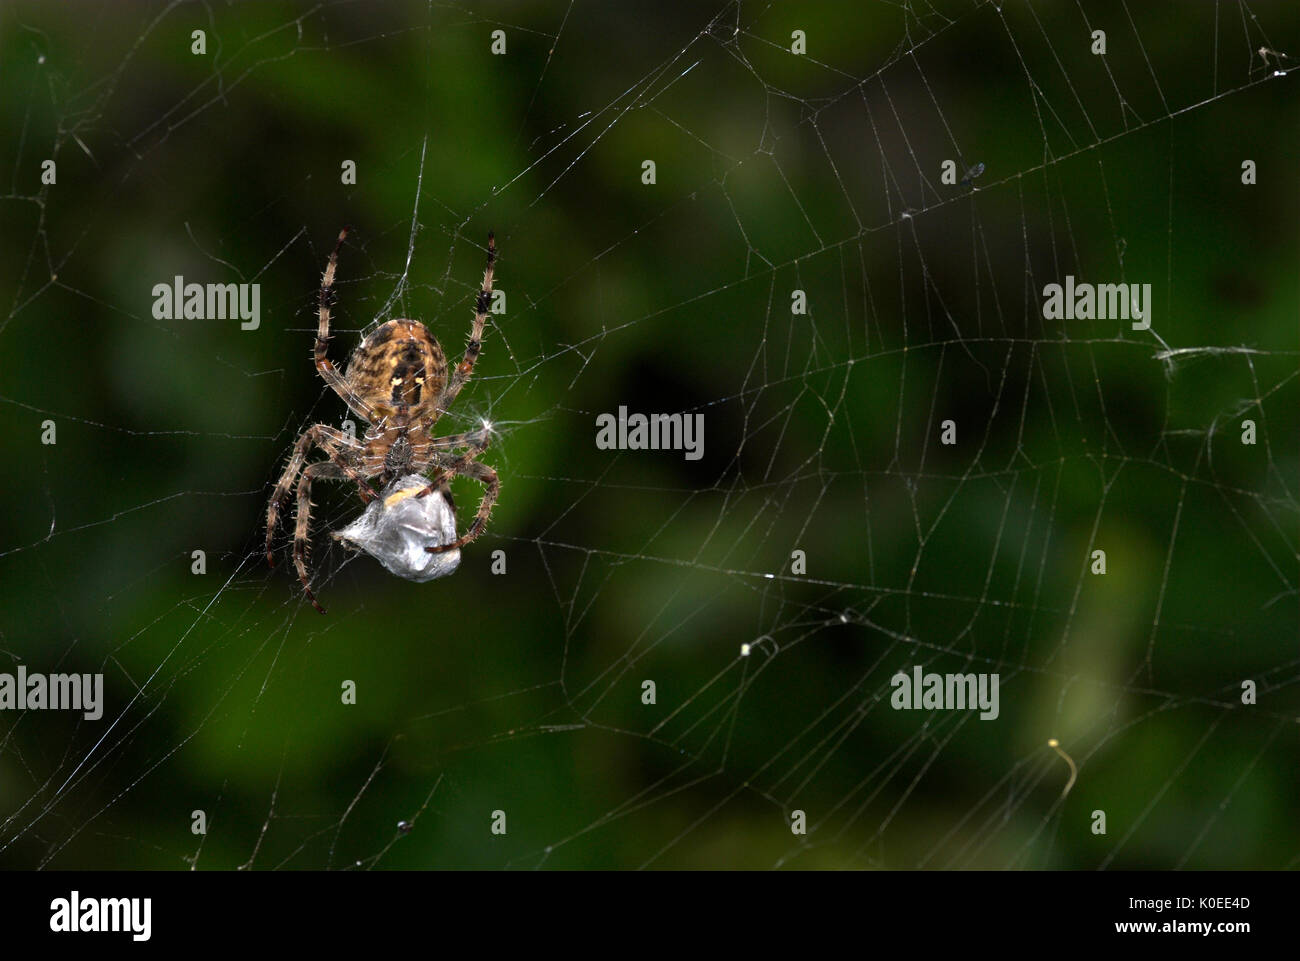 Giardino Spider, Araneus diadematus, sul web cocooning preda vittima, con fili di seta, catturati, predation, predator. Foto Stock